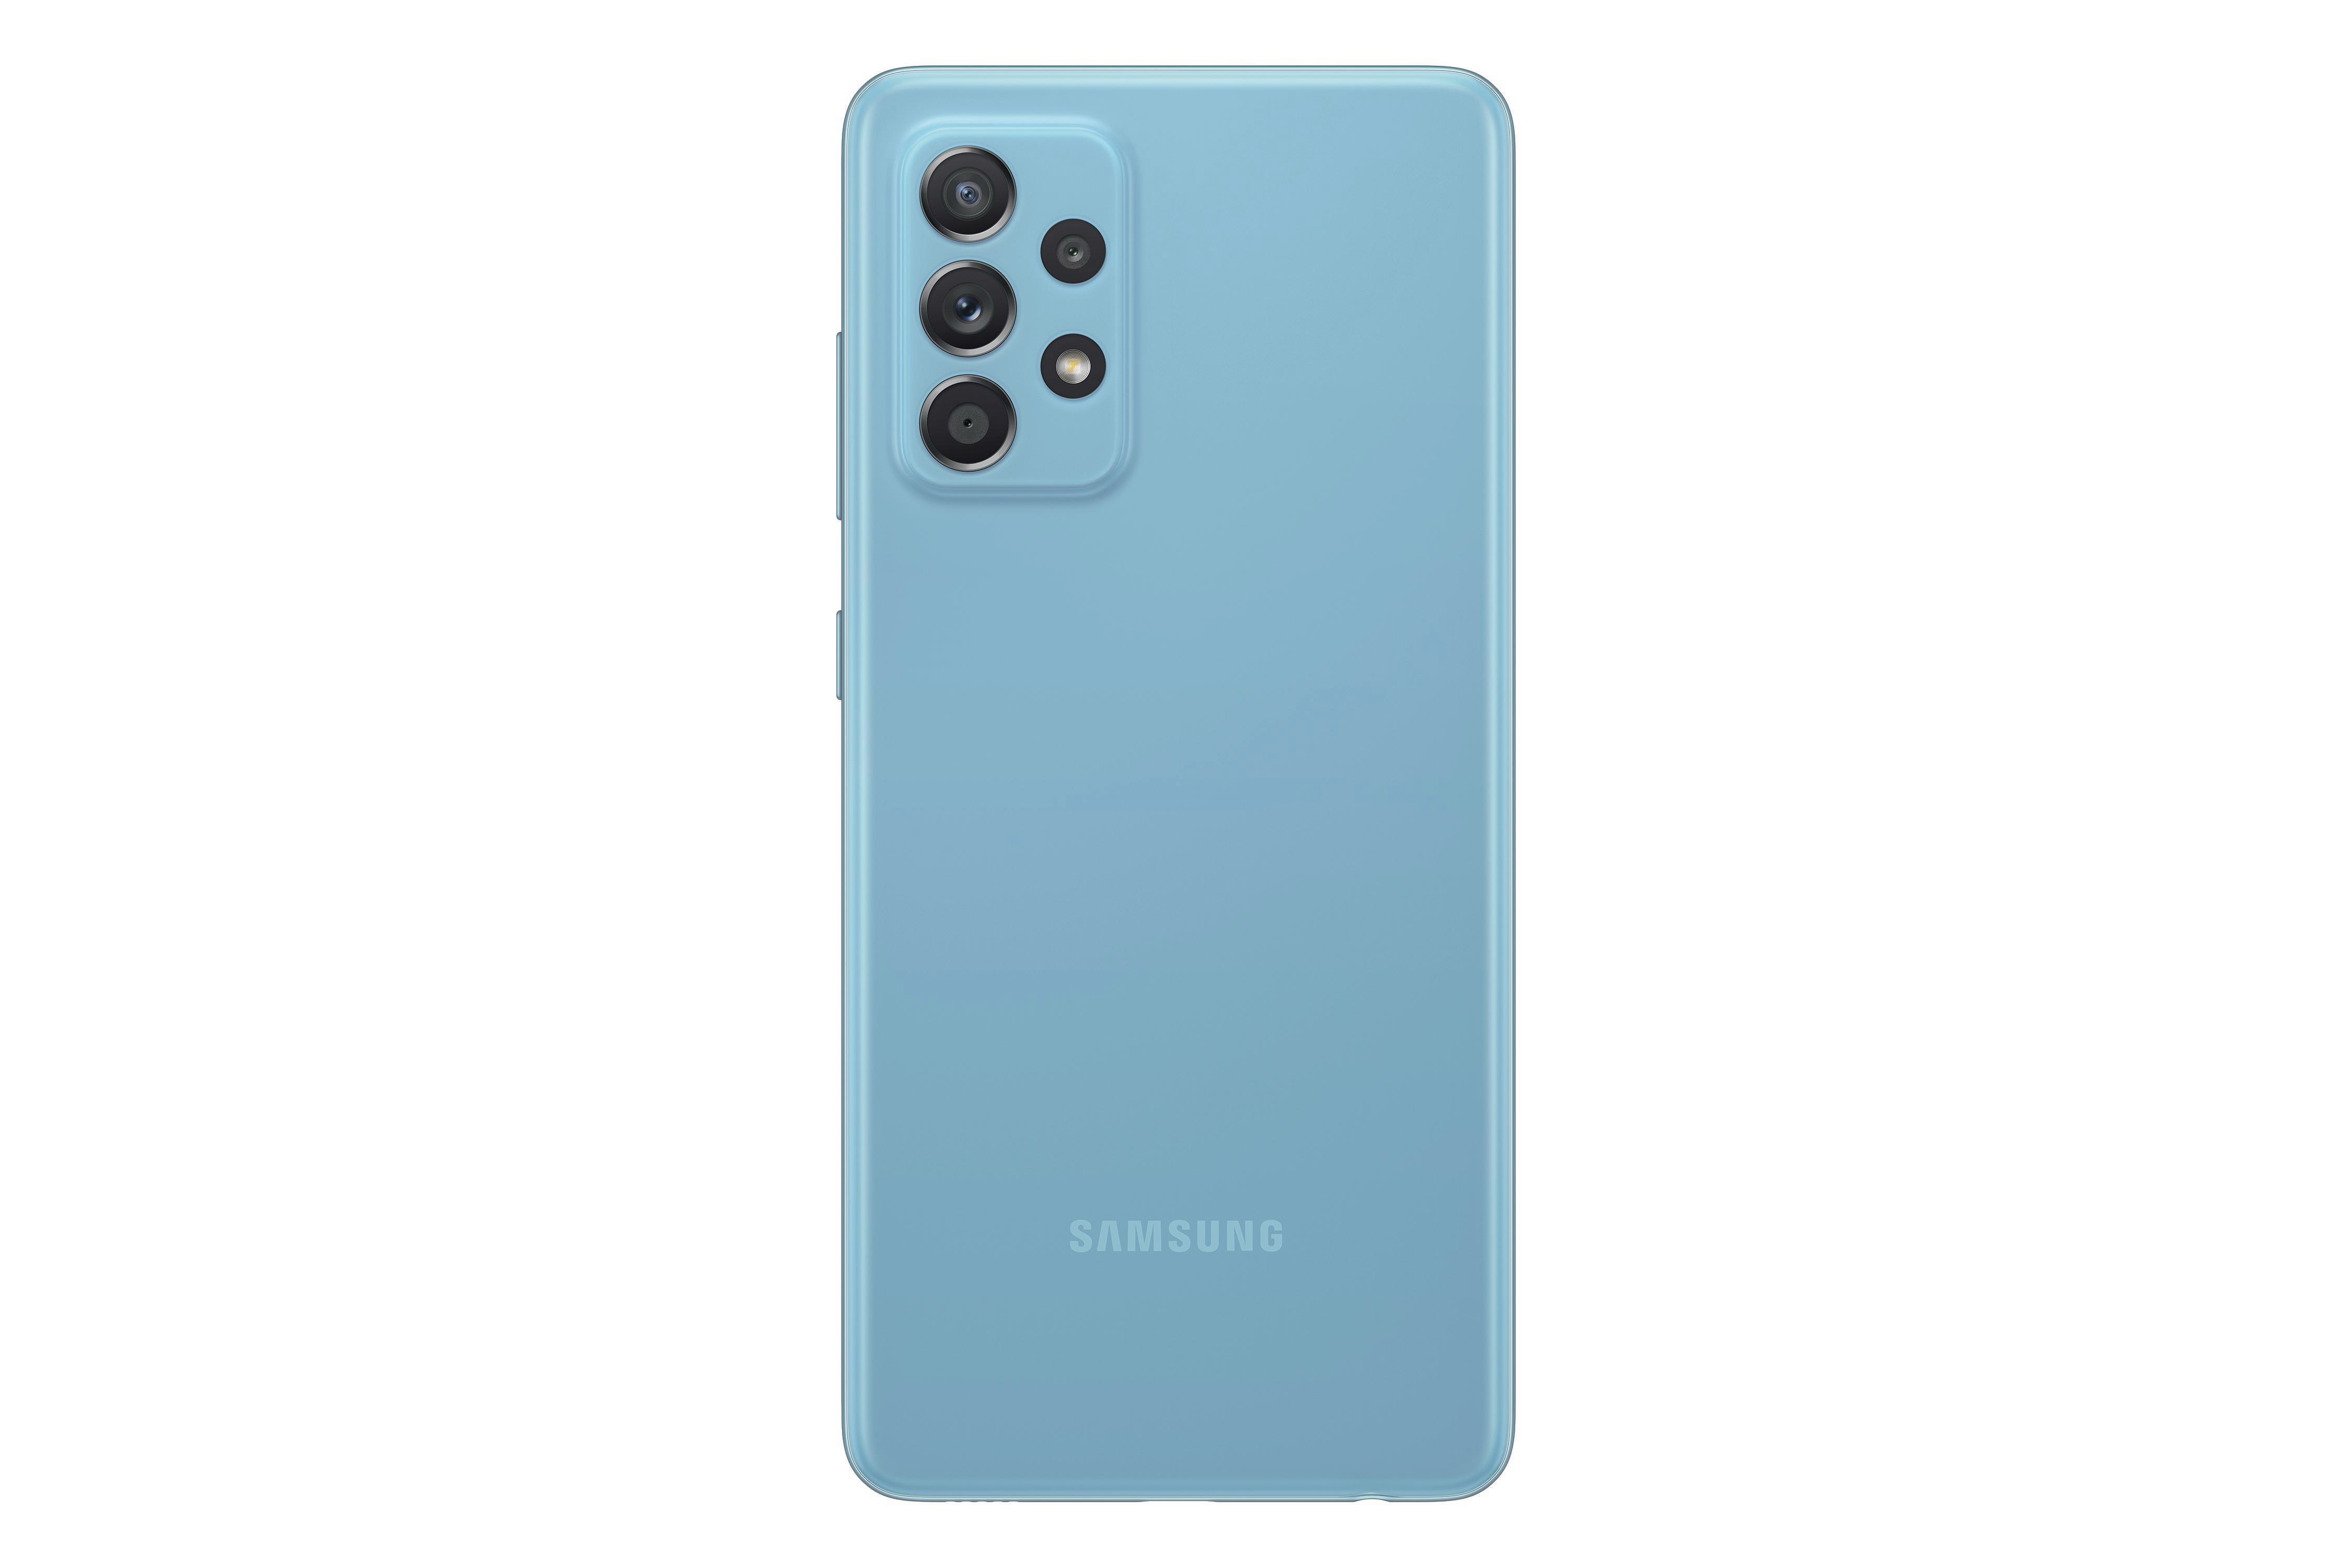 SAMSUNG GB Awesome Blue Dual 128 SIM A52 Galaxy